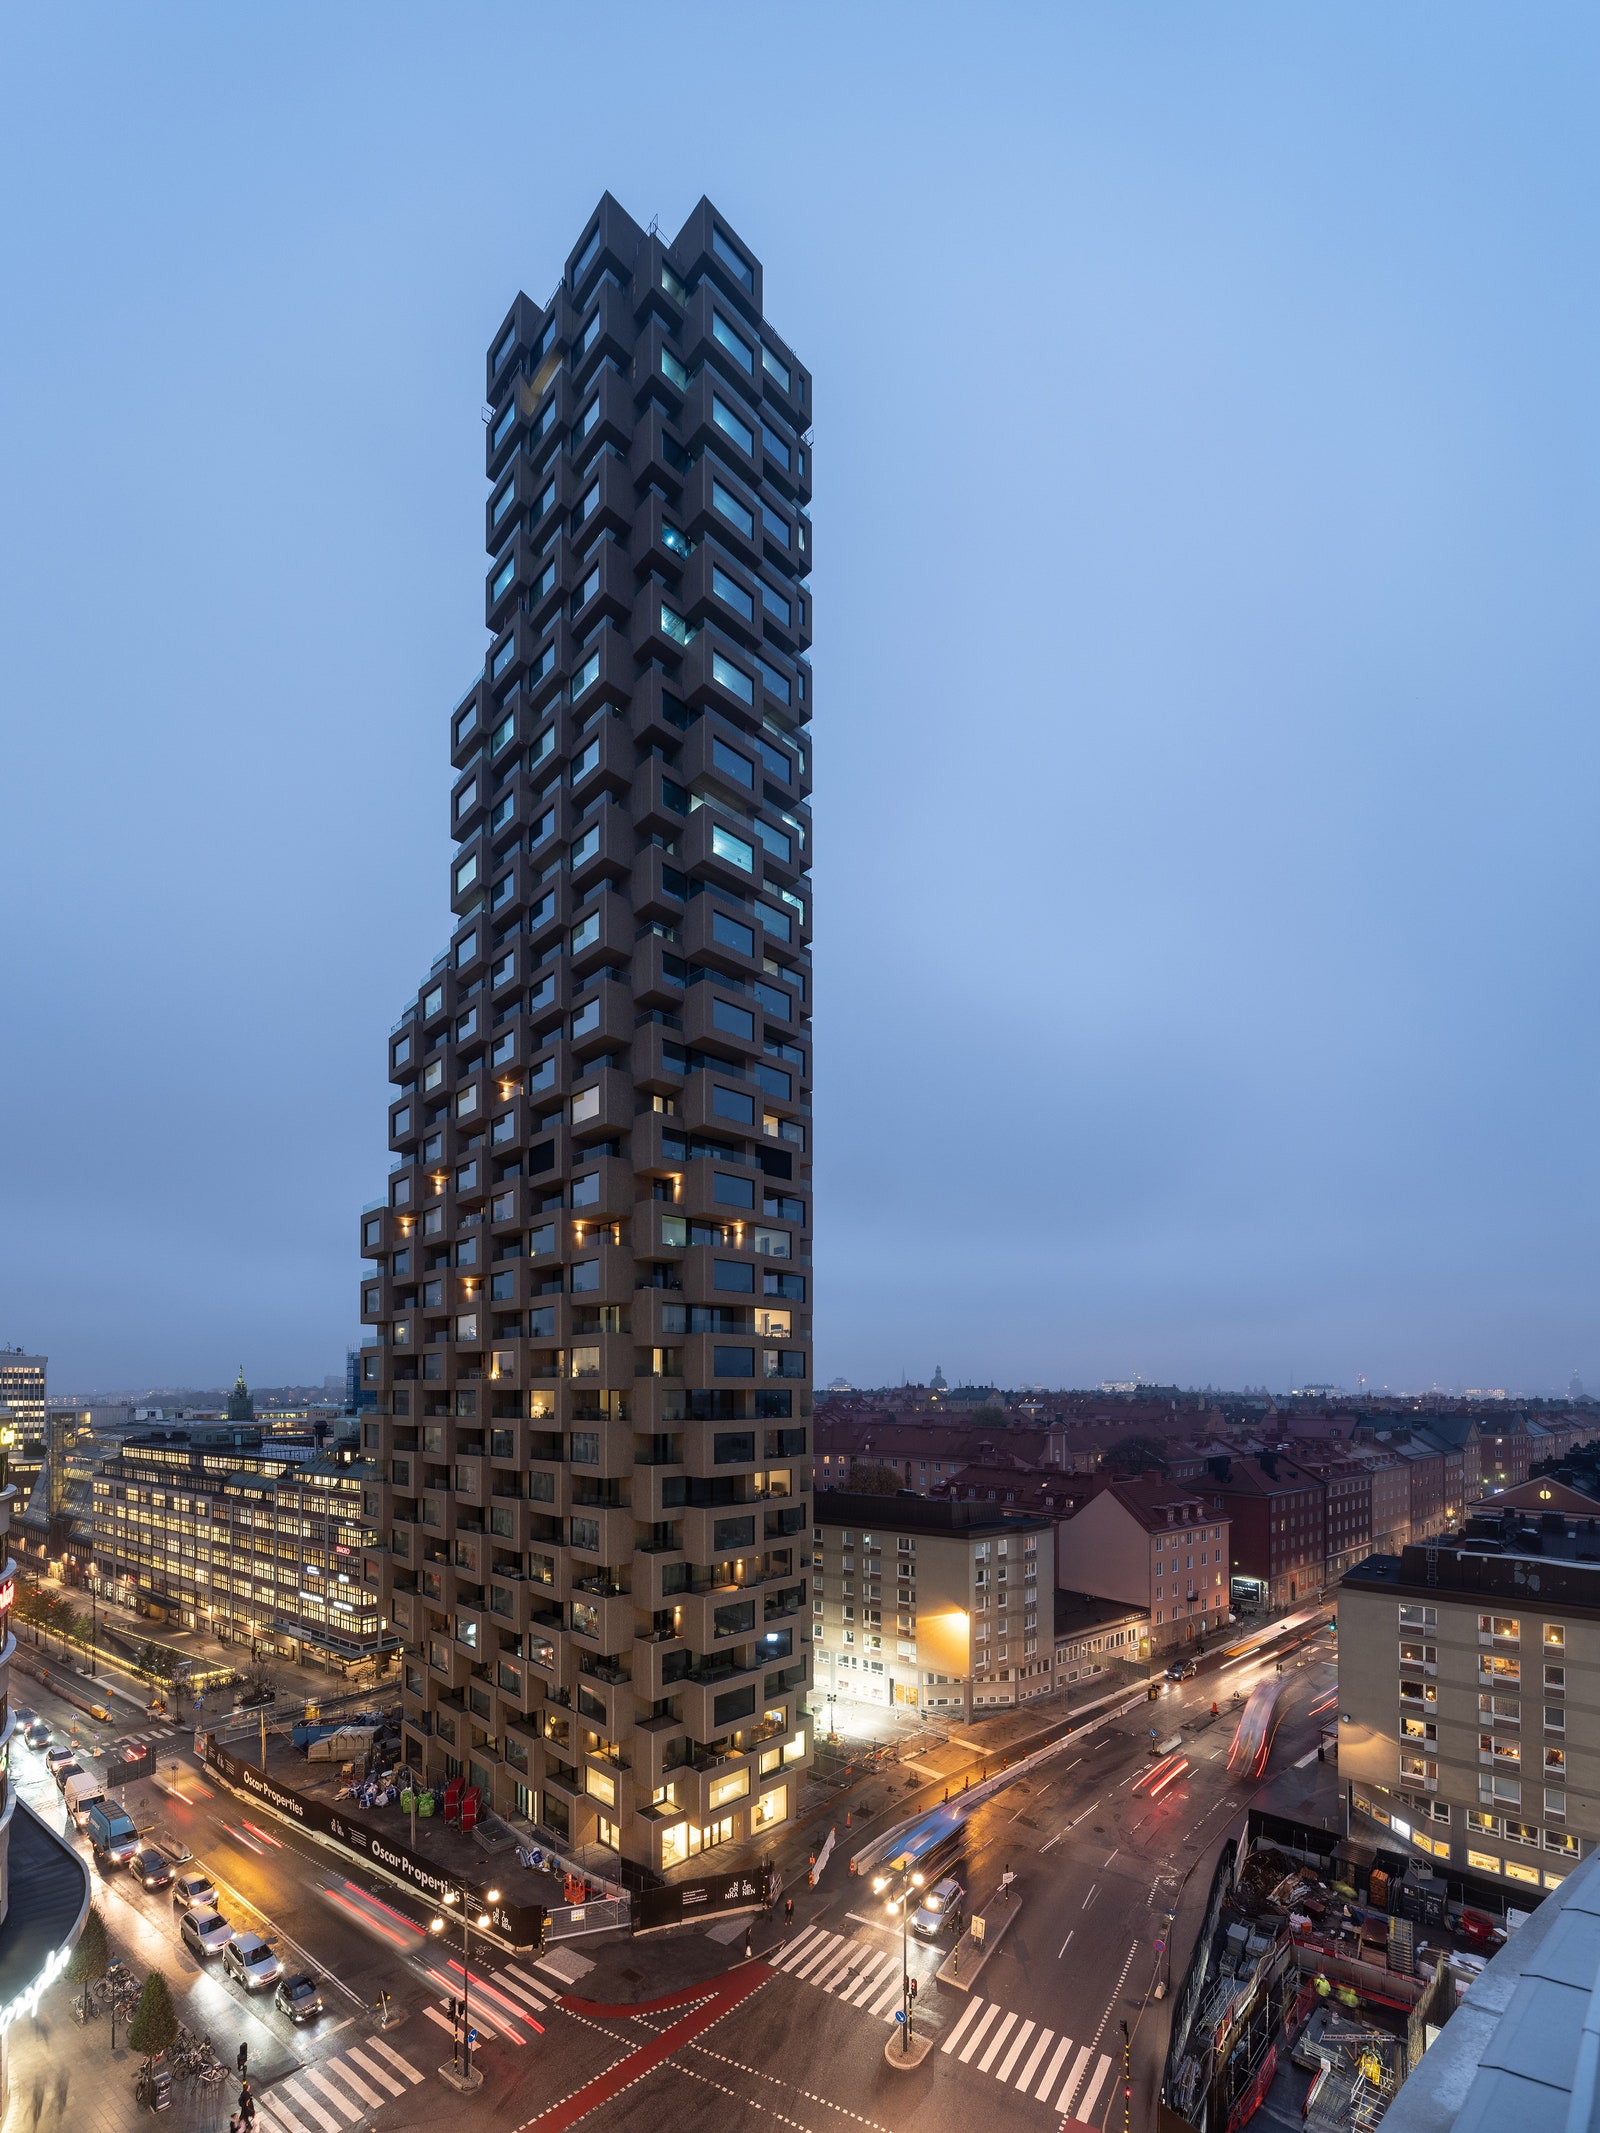 Многоквартирная башня от OMA в Стокгольме